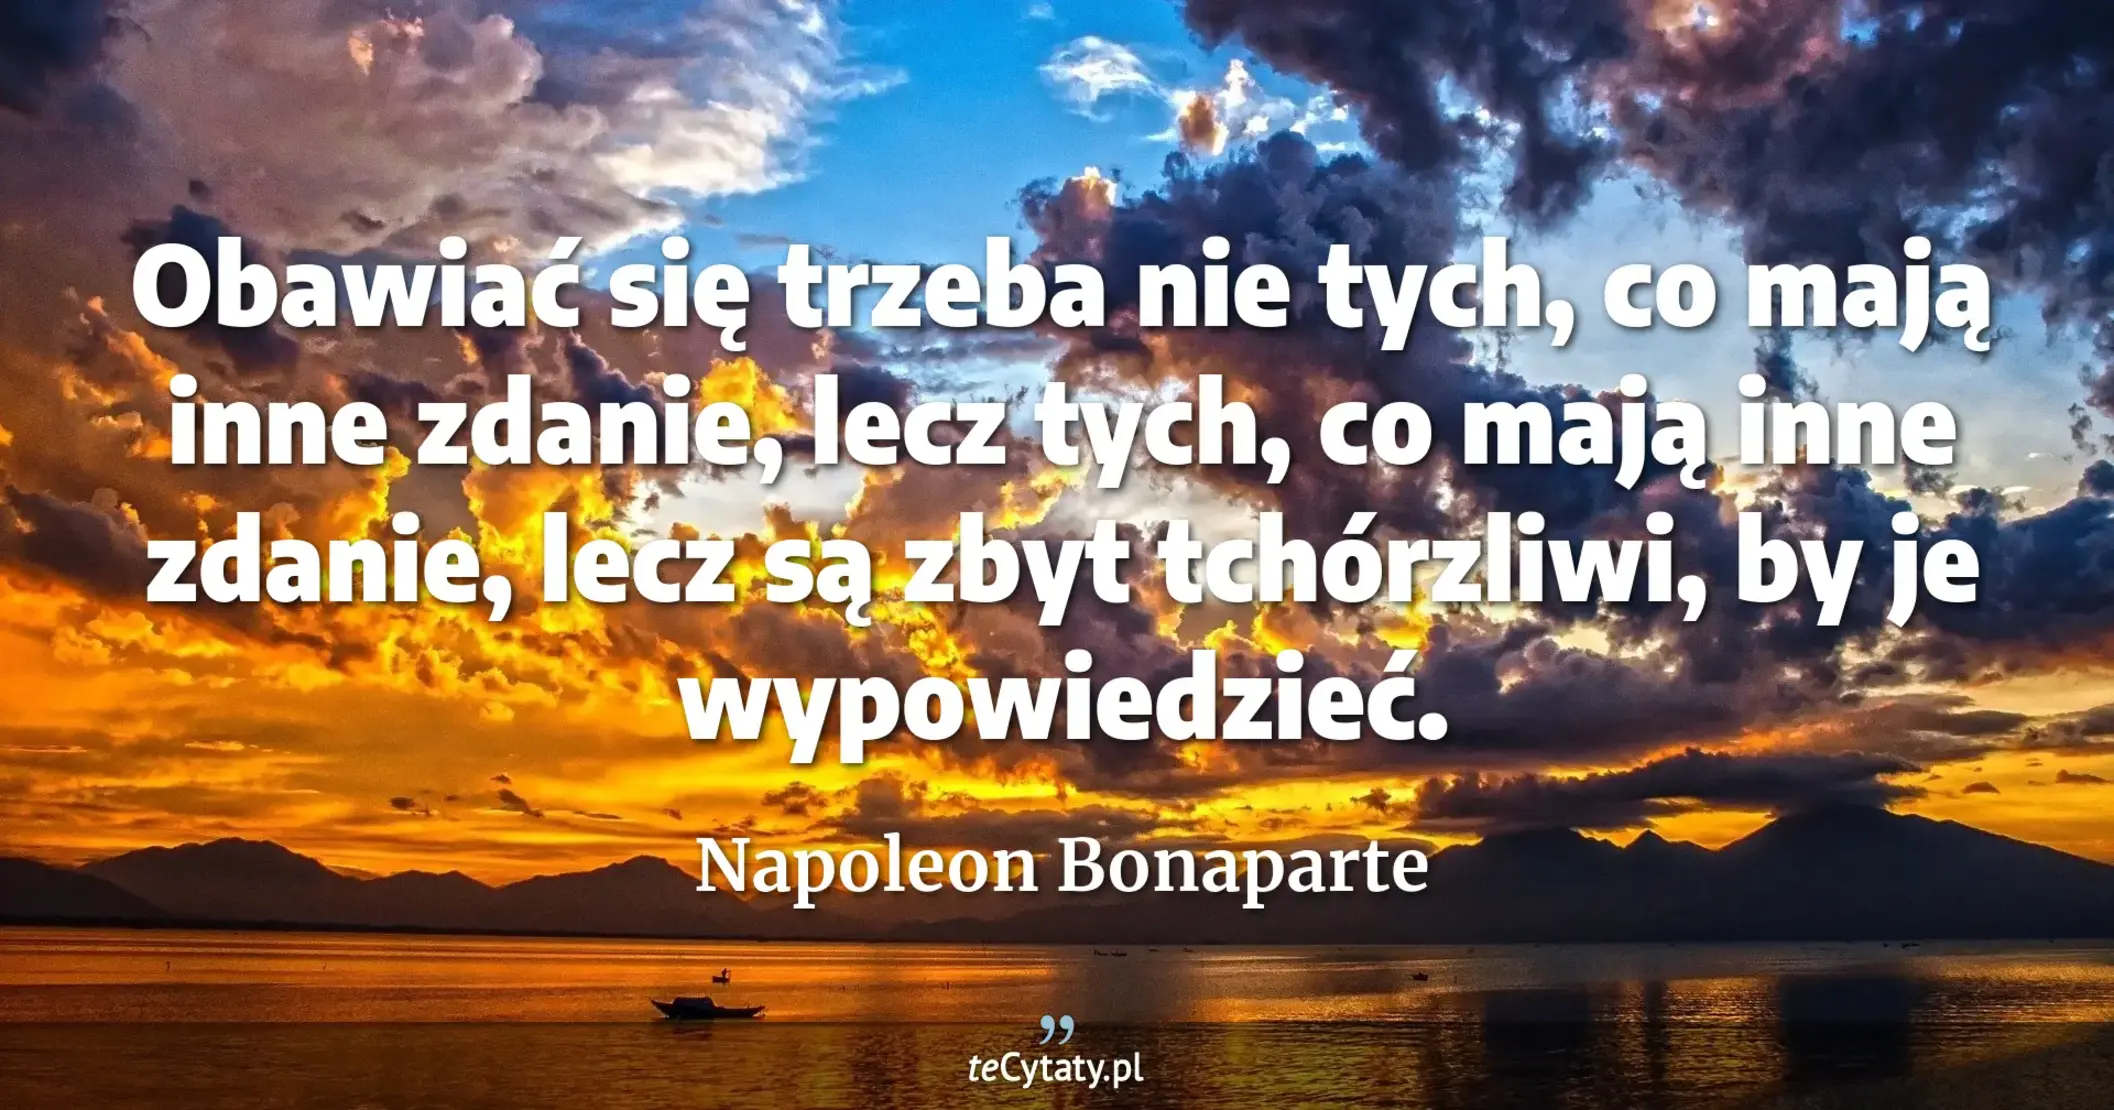 Obawiać się trzeba nie tych, co mają inne zdanie, lecz tych, co mają inne zdanie, lecz są zbyt tchórzliwi, by je wypowiedzieć. - Napoleon Bonaparte